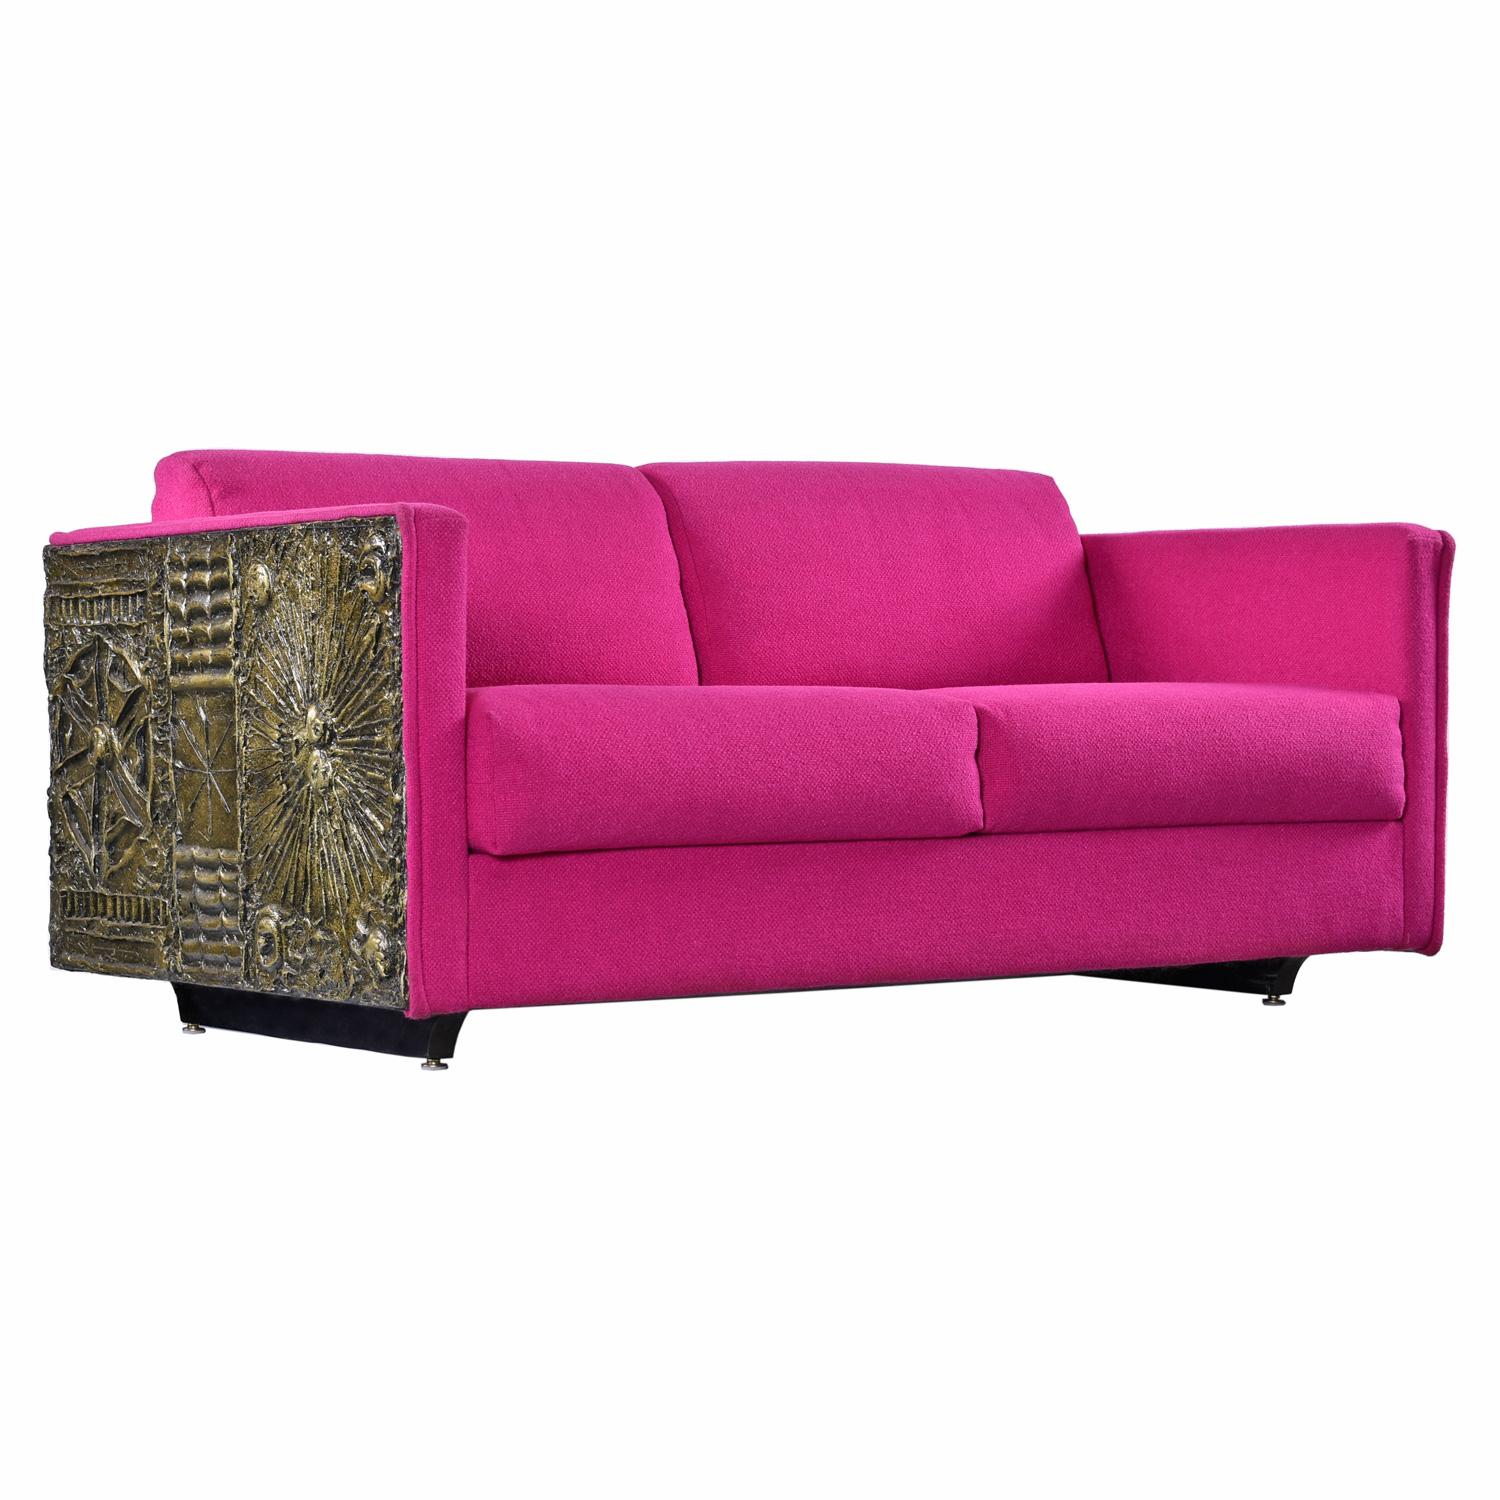 Vous ne trouverez nulle part une plus belle version originale de ce canapé-lits Adrian Pearsall Brutalist.  En effet, ce magnifique tissu de laine rose a été choisi à la main par le propriétaire d'origine et les étiquettes de Craft Associates se